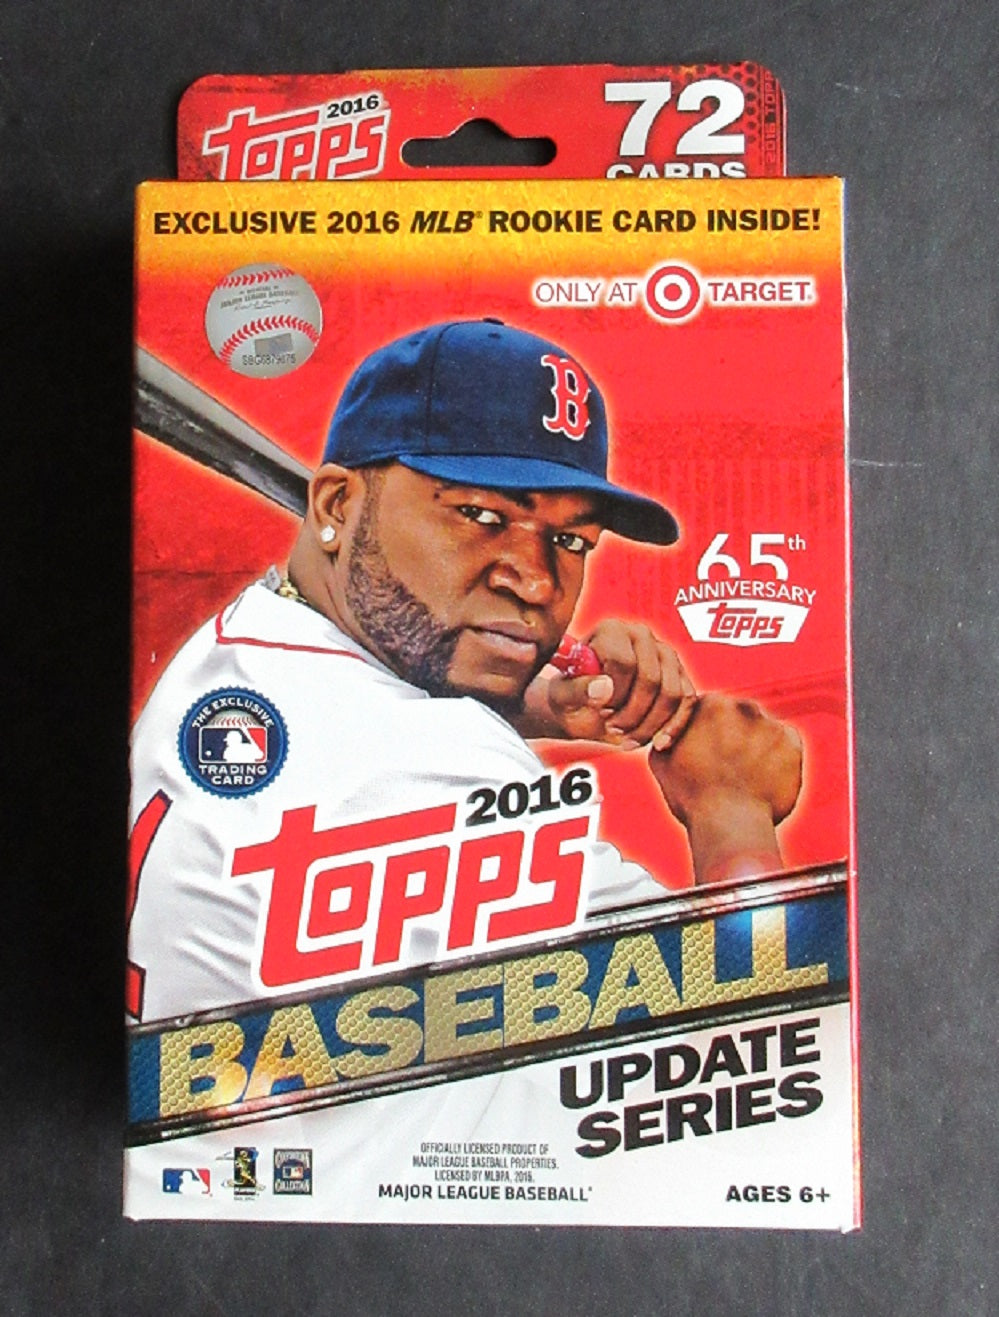 2016 Topps Baseball Update Series Hanger Box (72 Cards) (Target)